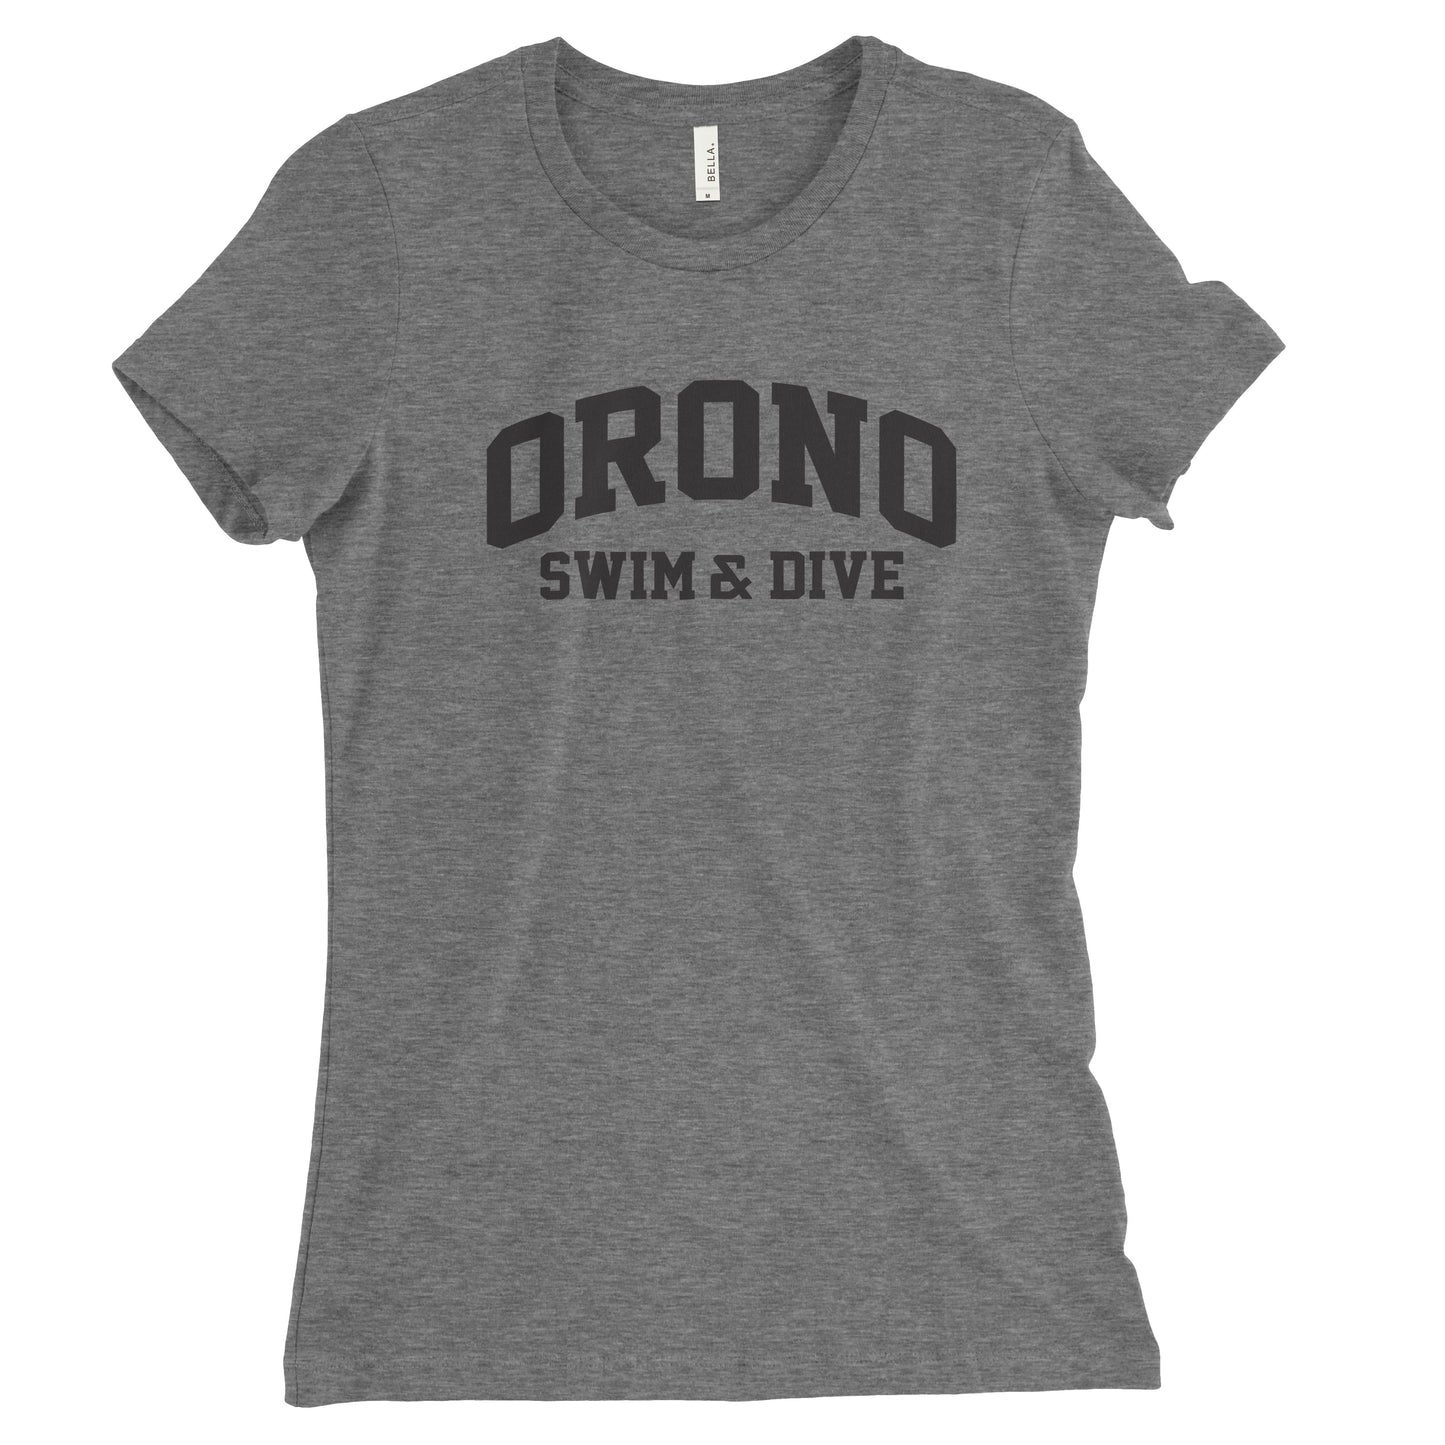 Orono Swim & Dive Collegiate // Women's Tri-blend Tee